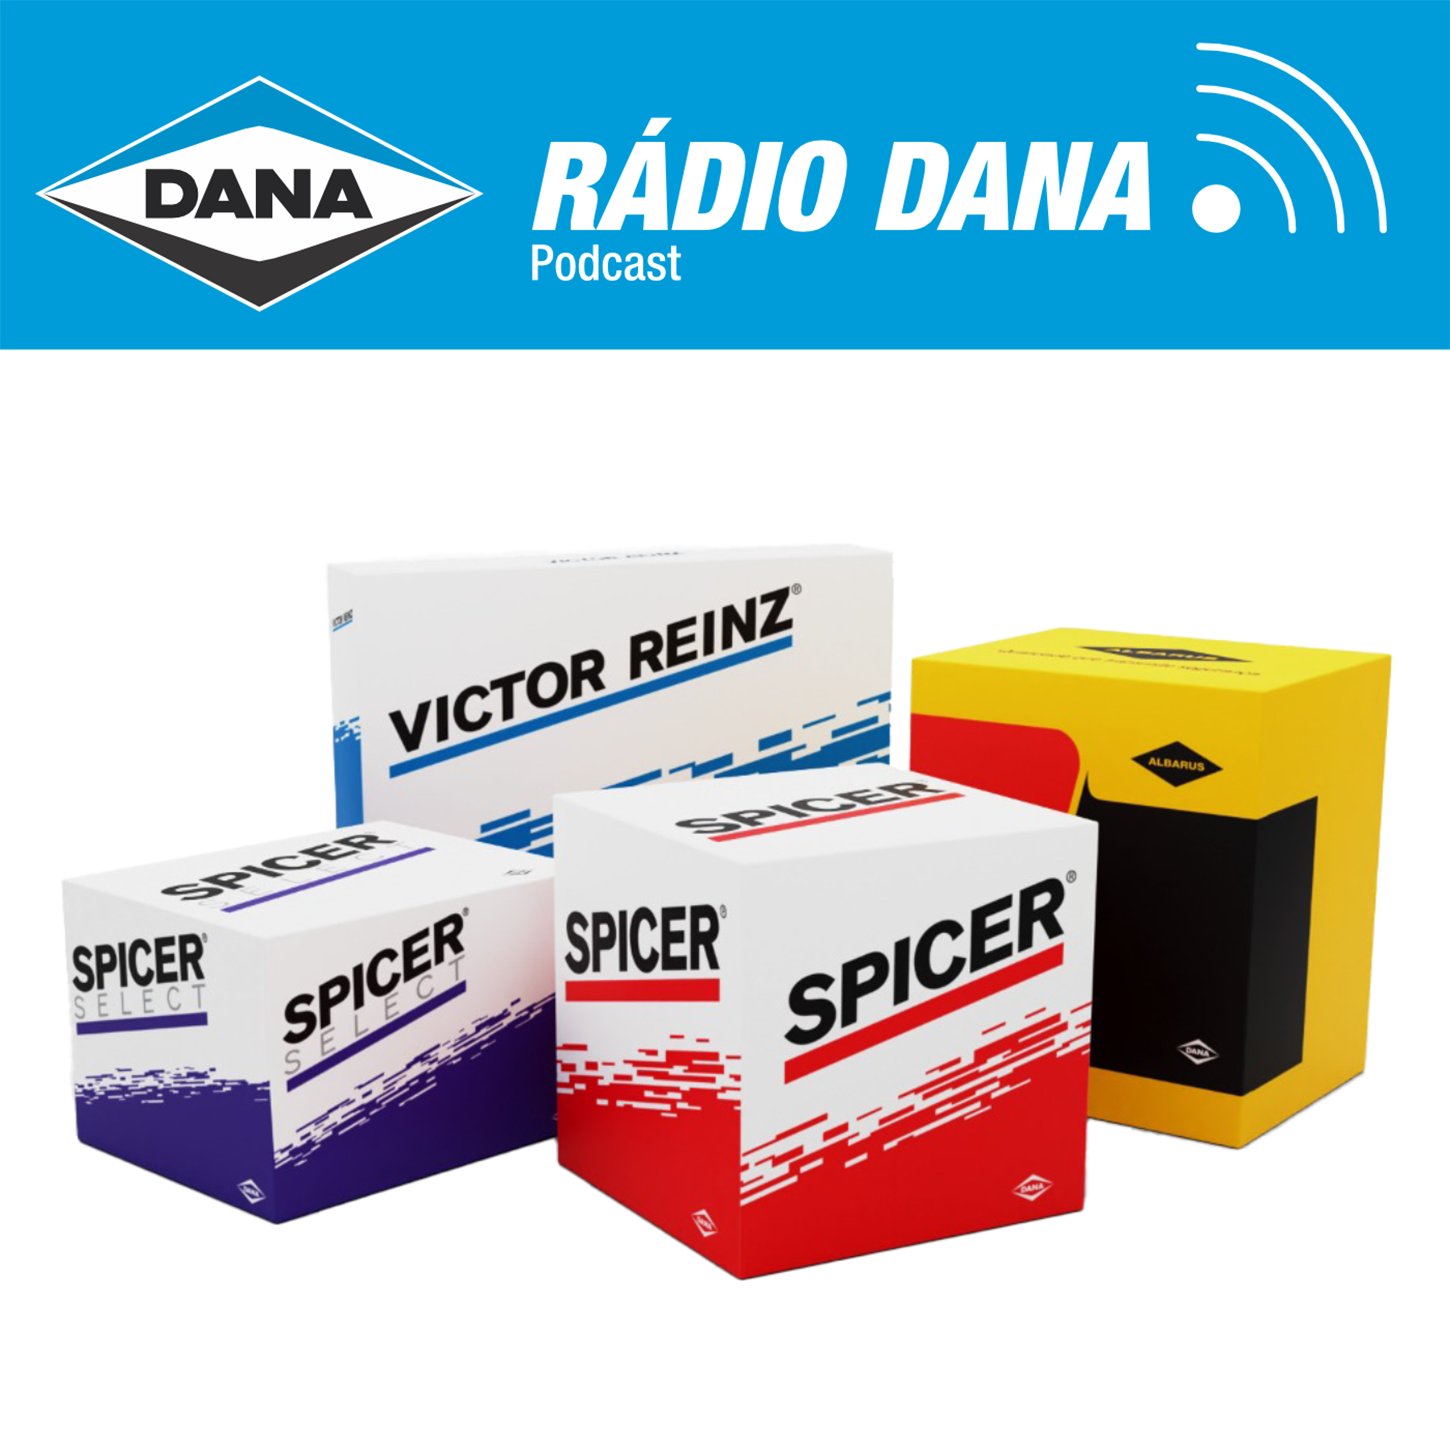 Episódio 101 - Rádio Dana - Spicer Acelera nas Pistas